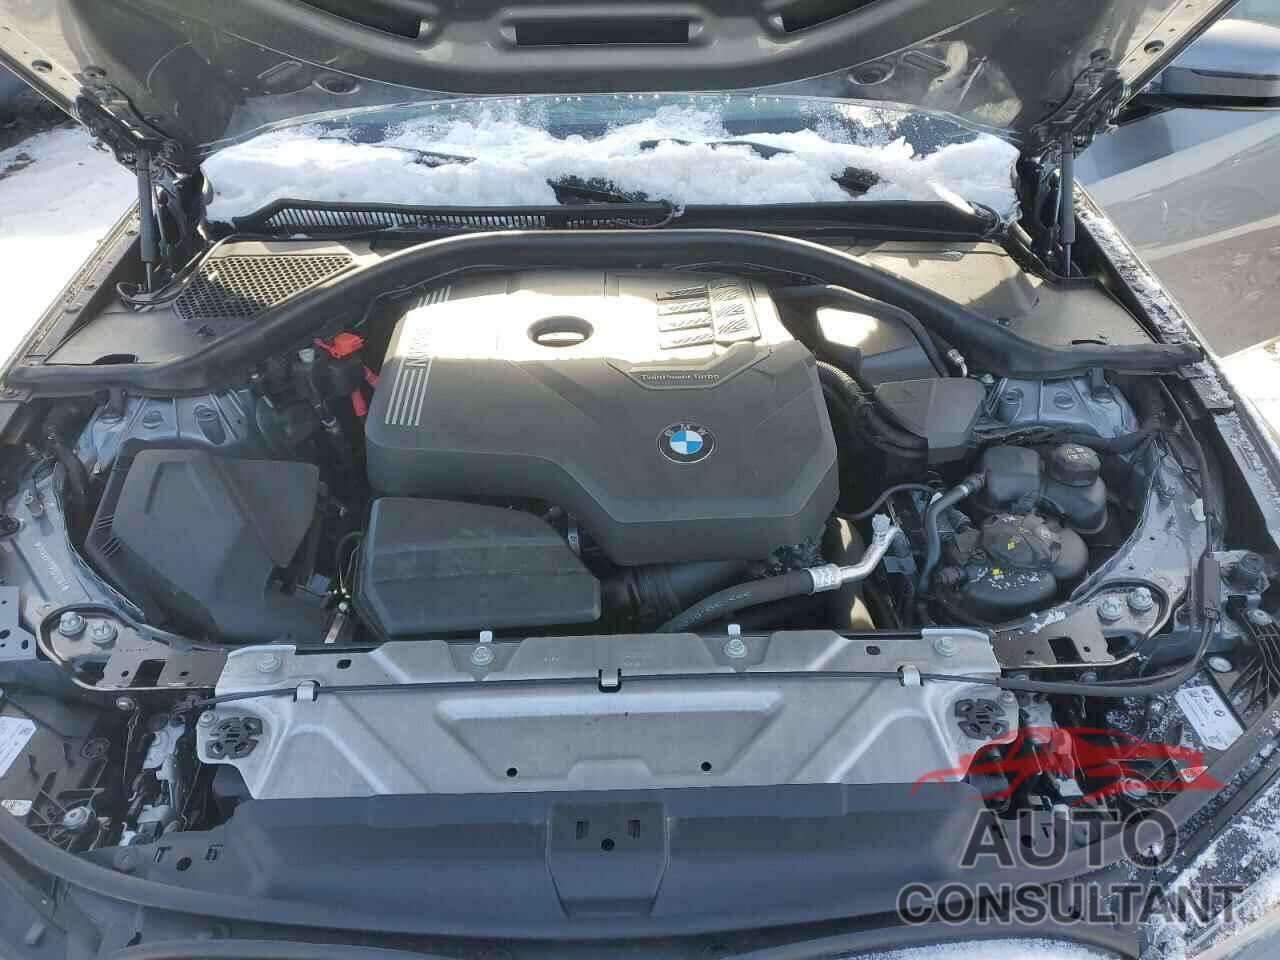 BMW 3 SERIES 2023 - 3MW89FF09P8D52087